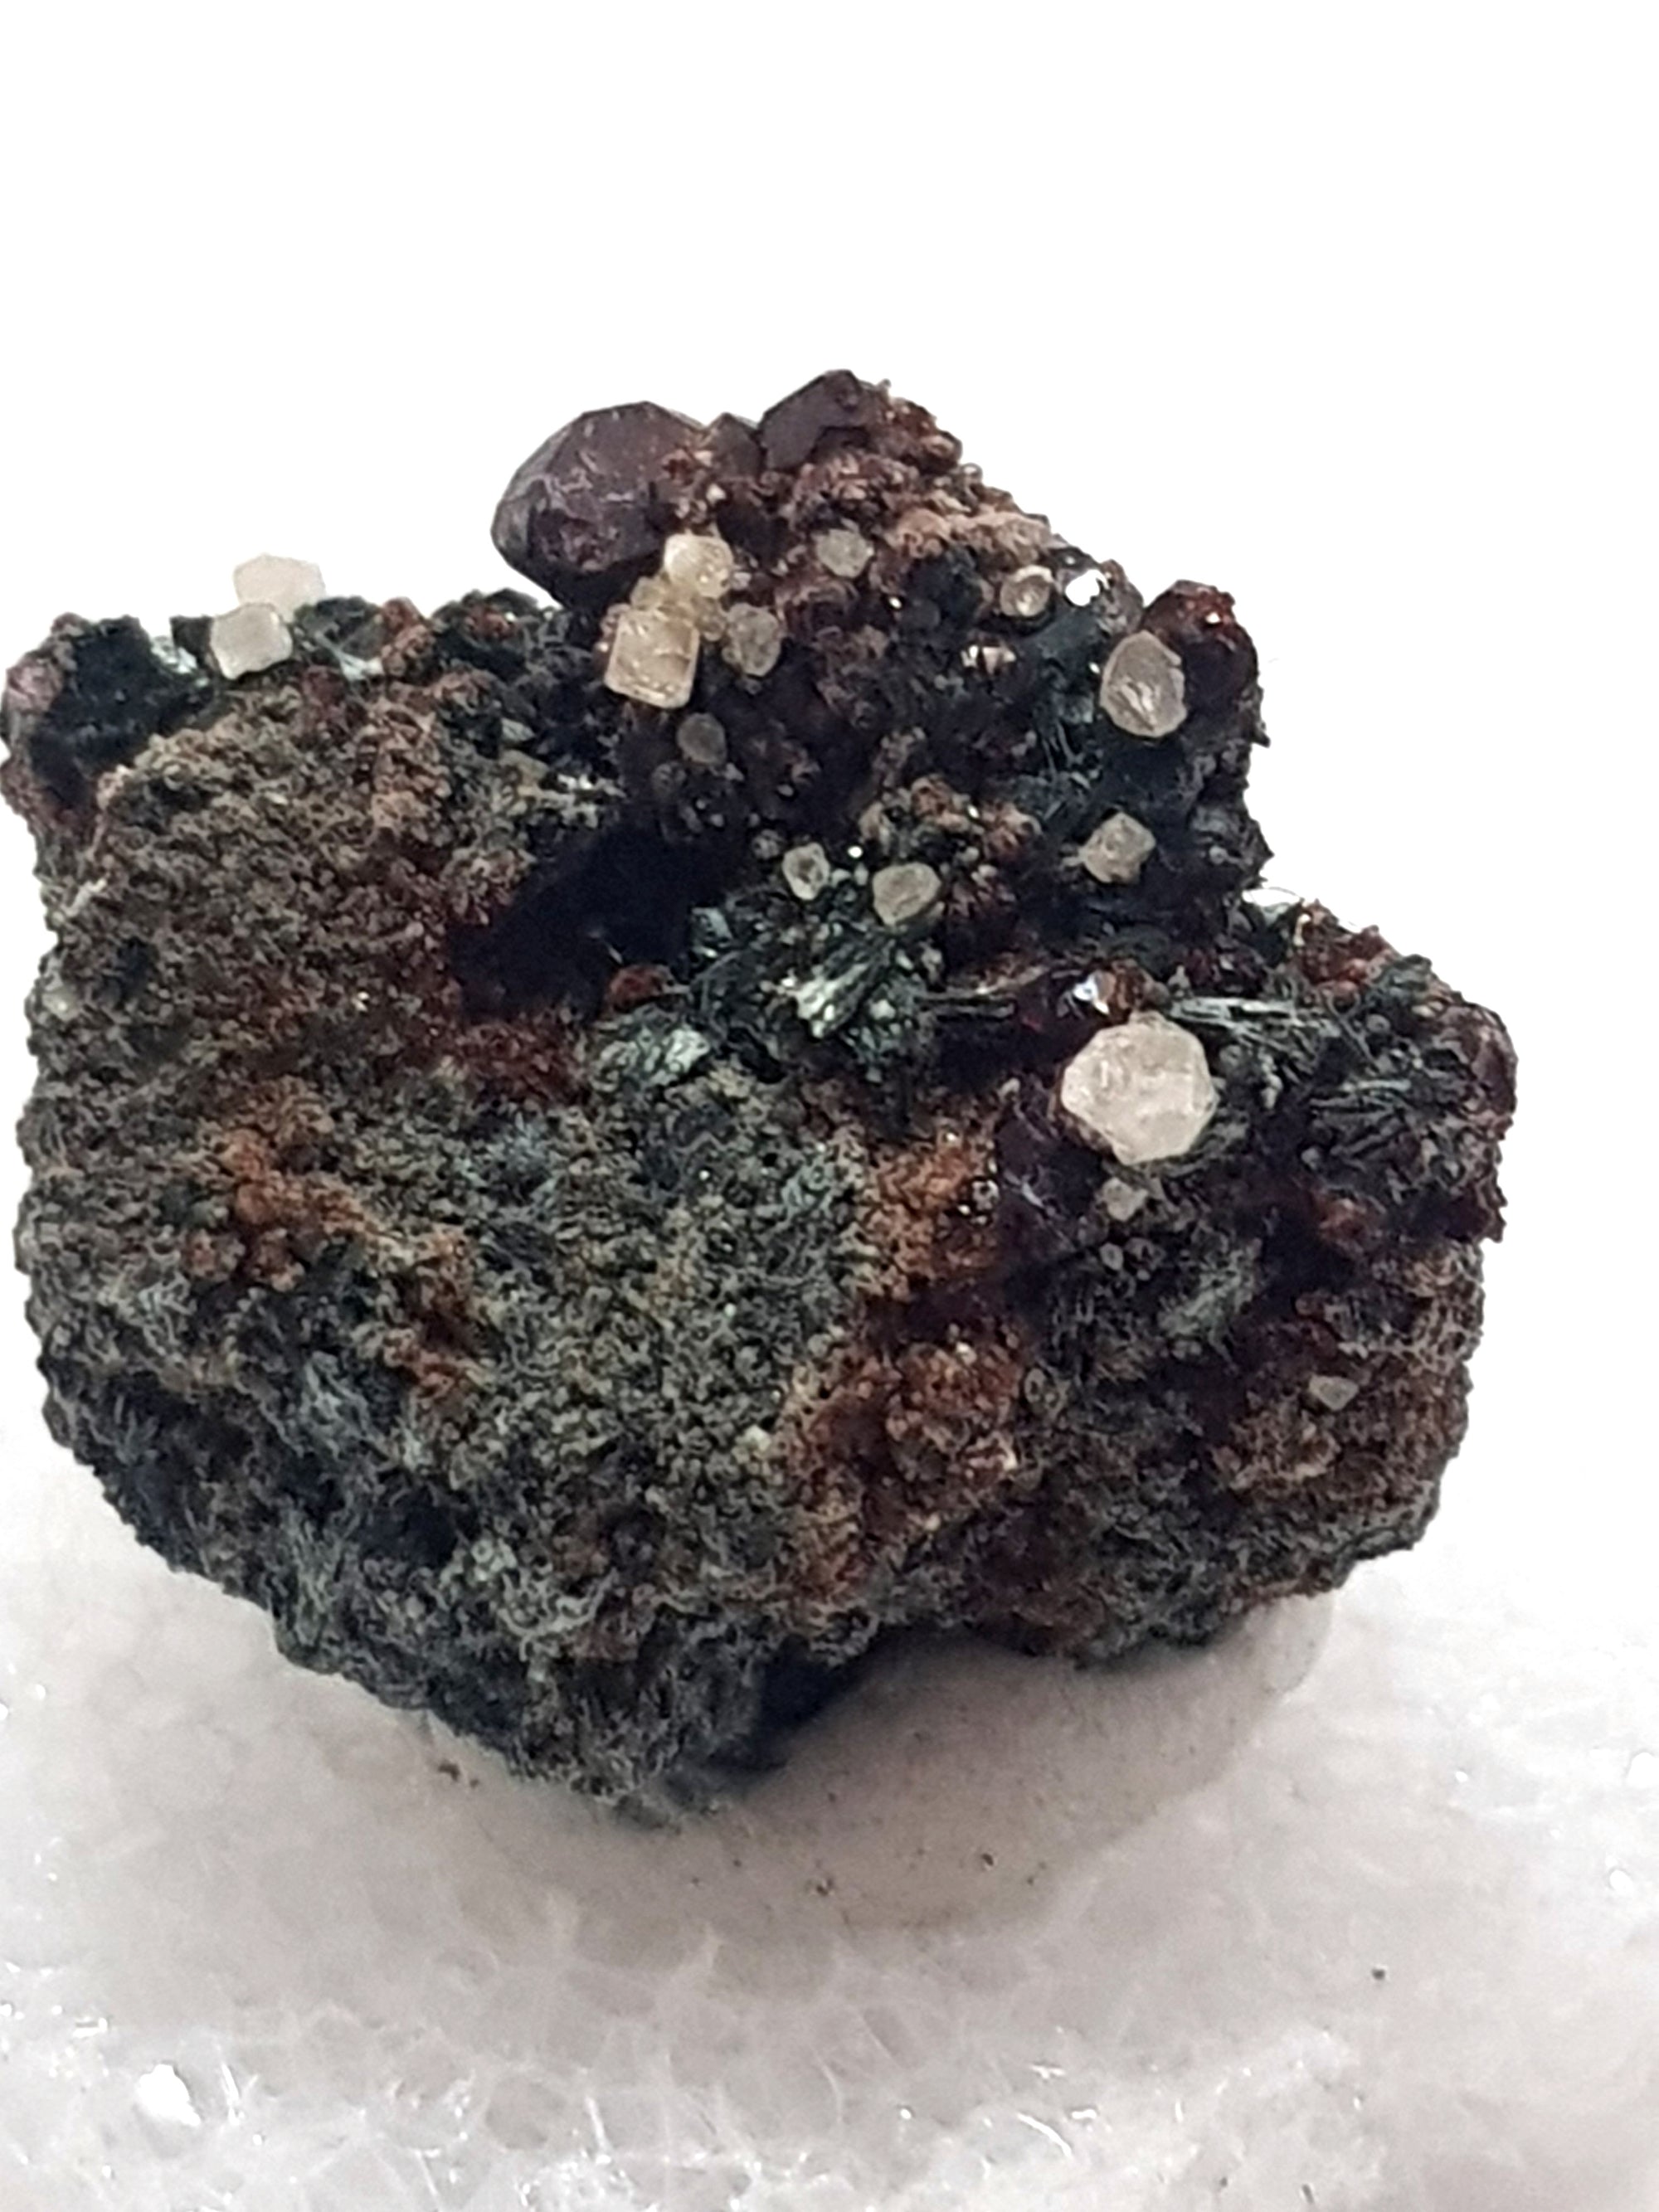 scheelite, grossular, actinolite. white crystals on a green and brown matrix.